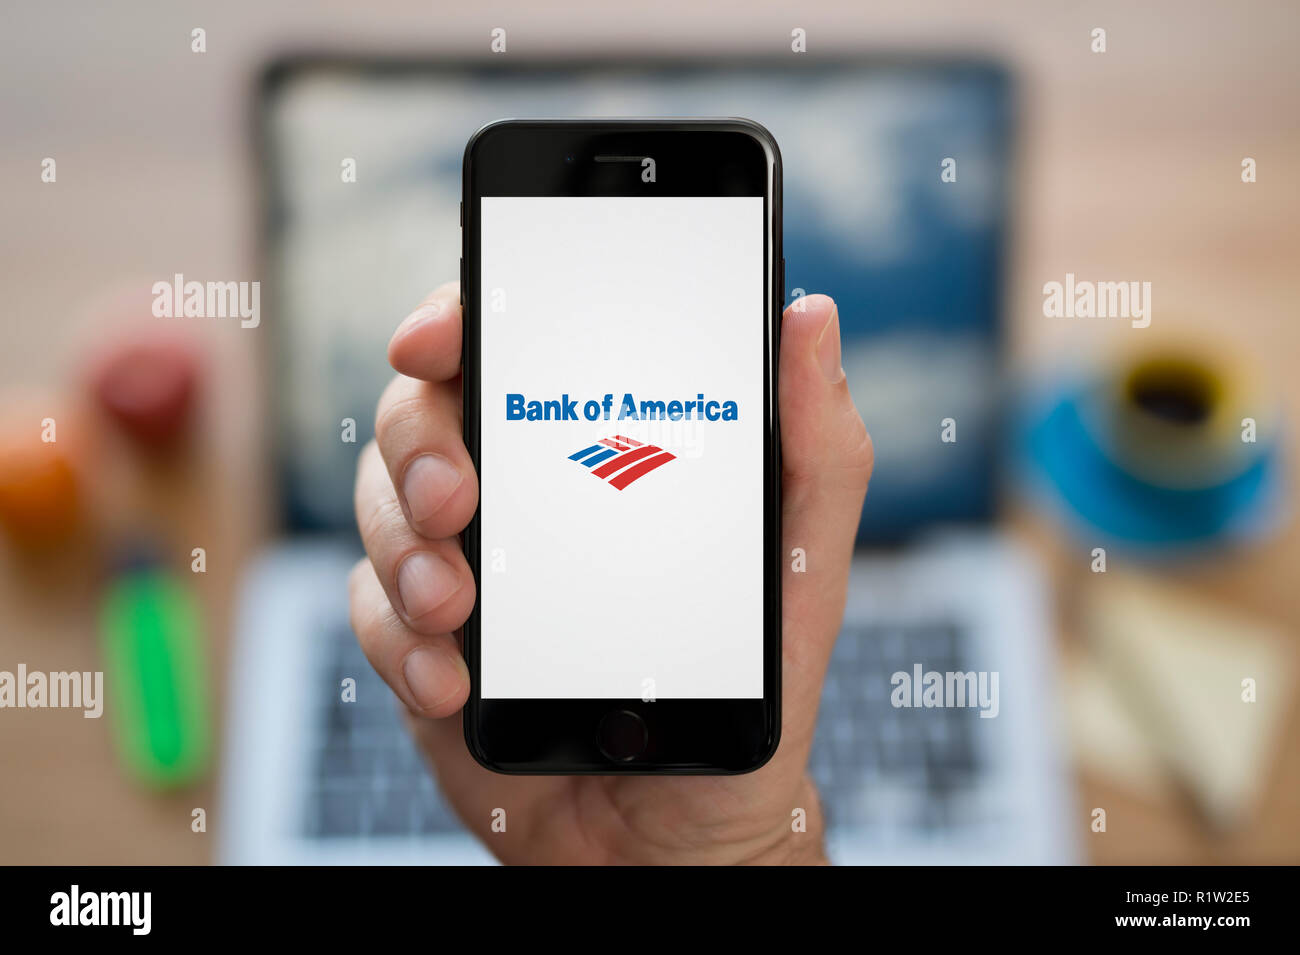 Ein Mann schaut auf seinem iPhone die zeigt die Bank von Amerika logo, während saß an seinem Computer Schreibtisch (nur redaktionelle Nutzung). Stockfoto